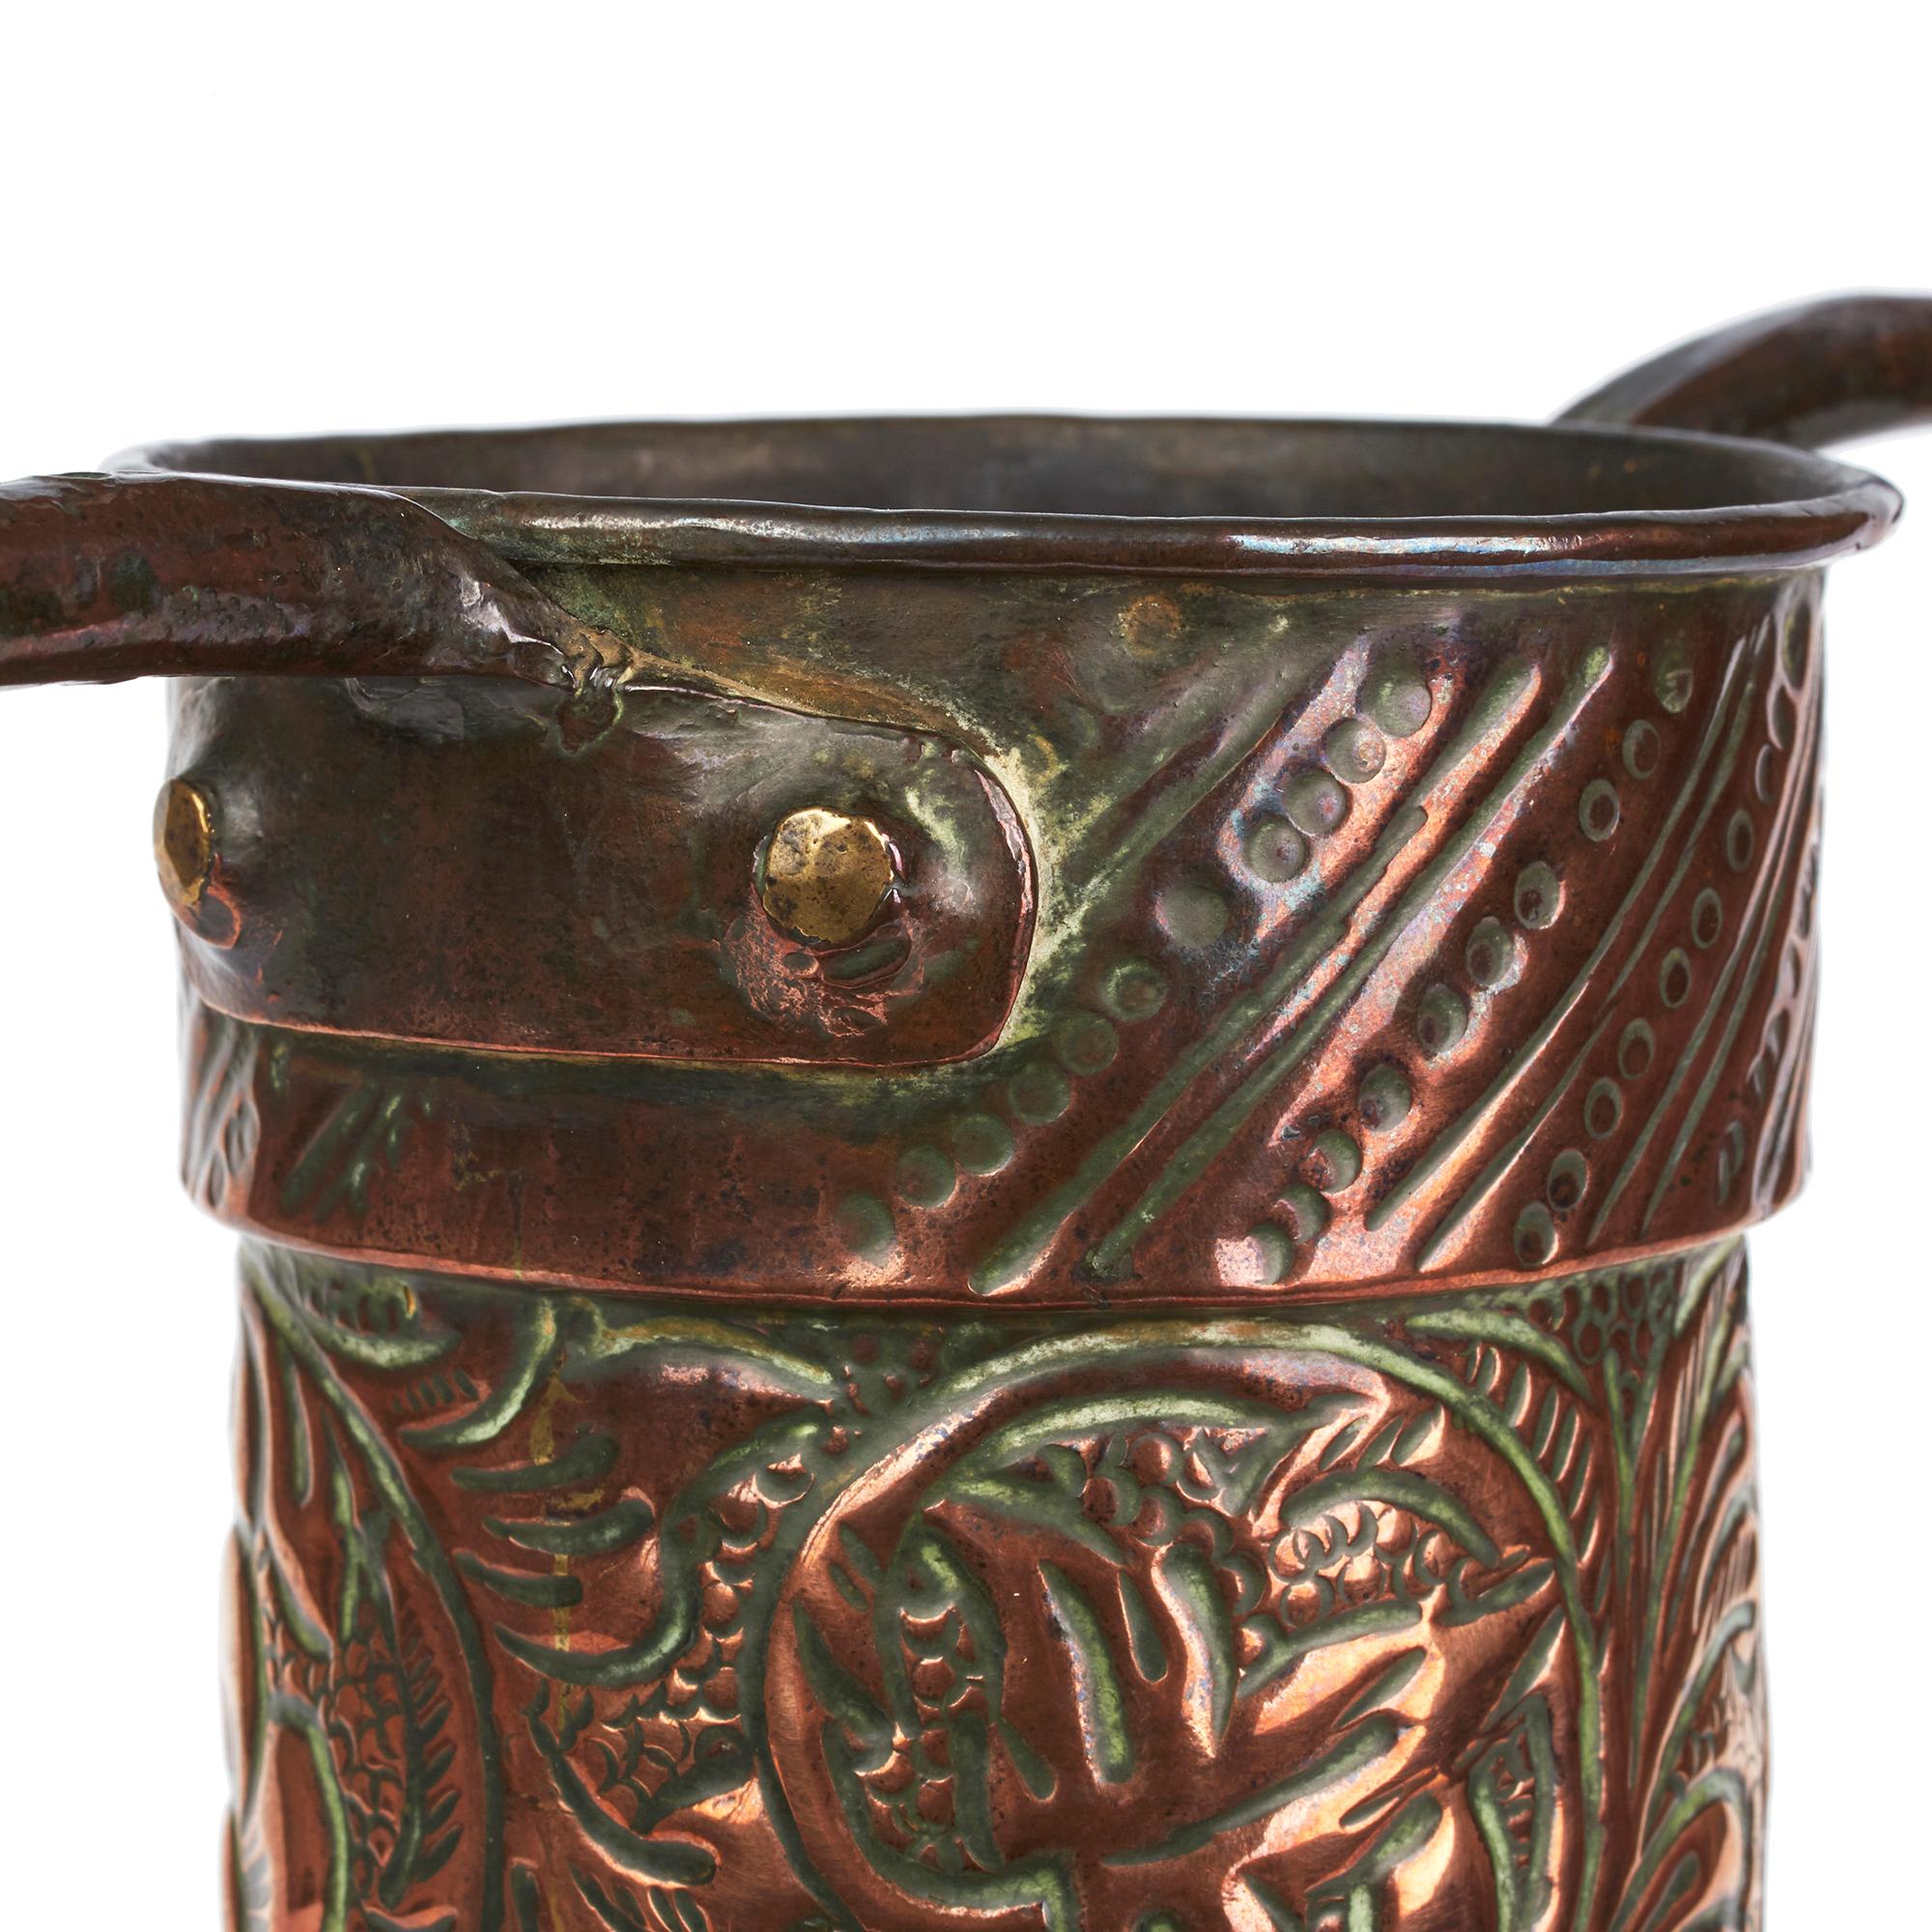 Repoussé Stylish Antique Asian Twin Handled Repousse Design Copper Vase 19th Century